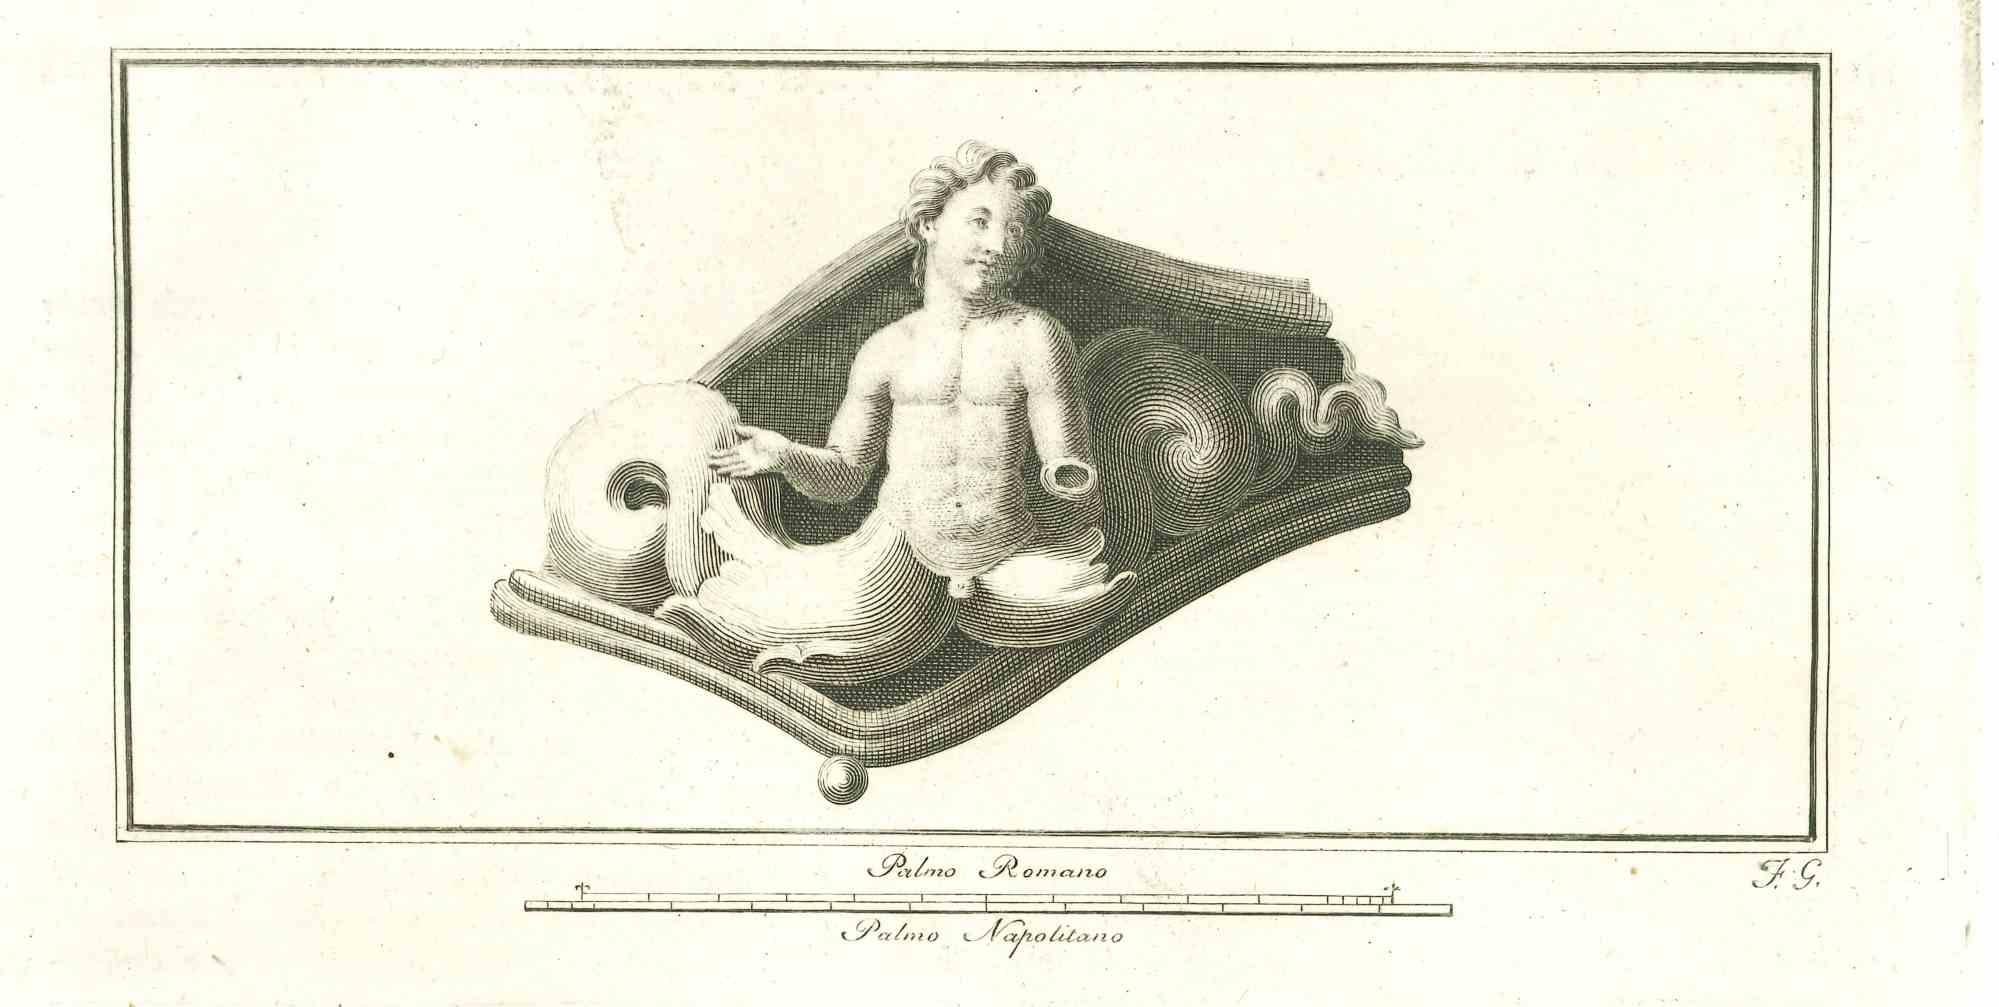 Unknown Figurative Print – Antikes römisches Relief - Original-Radierung - 18. Jahrhundert